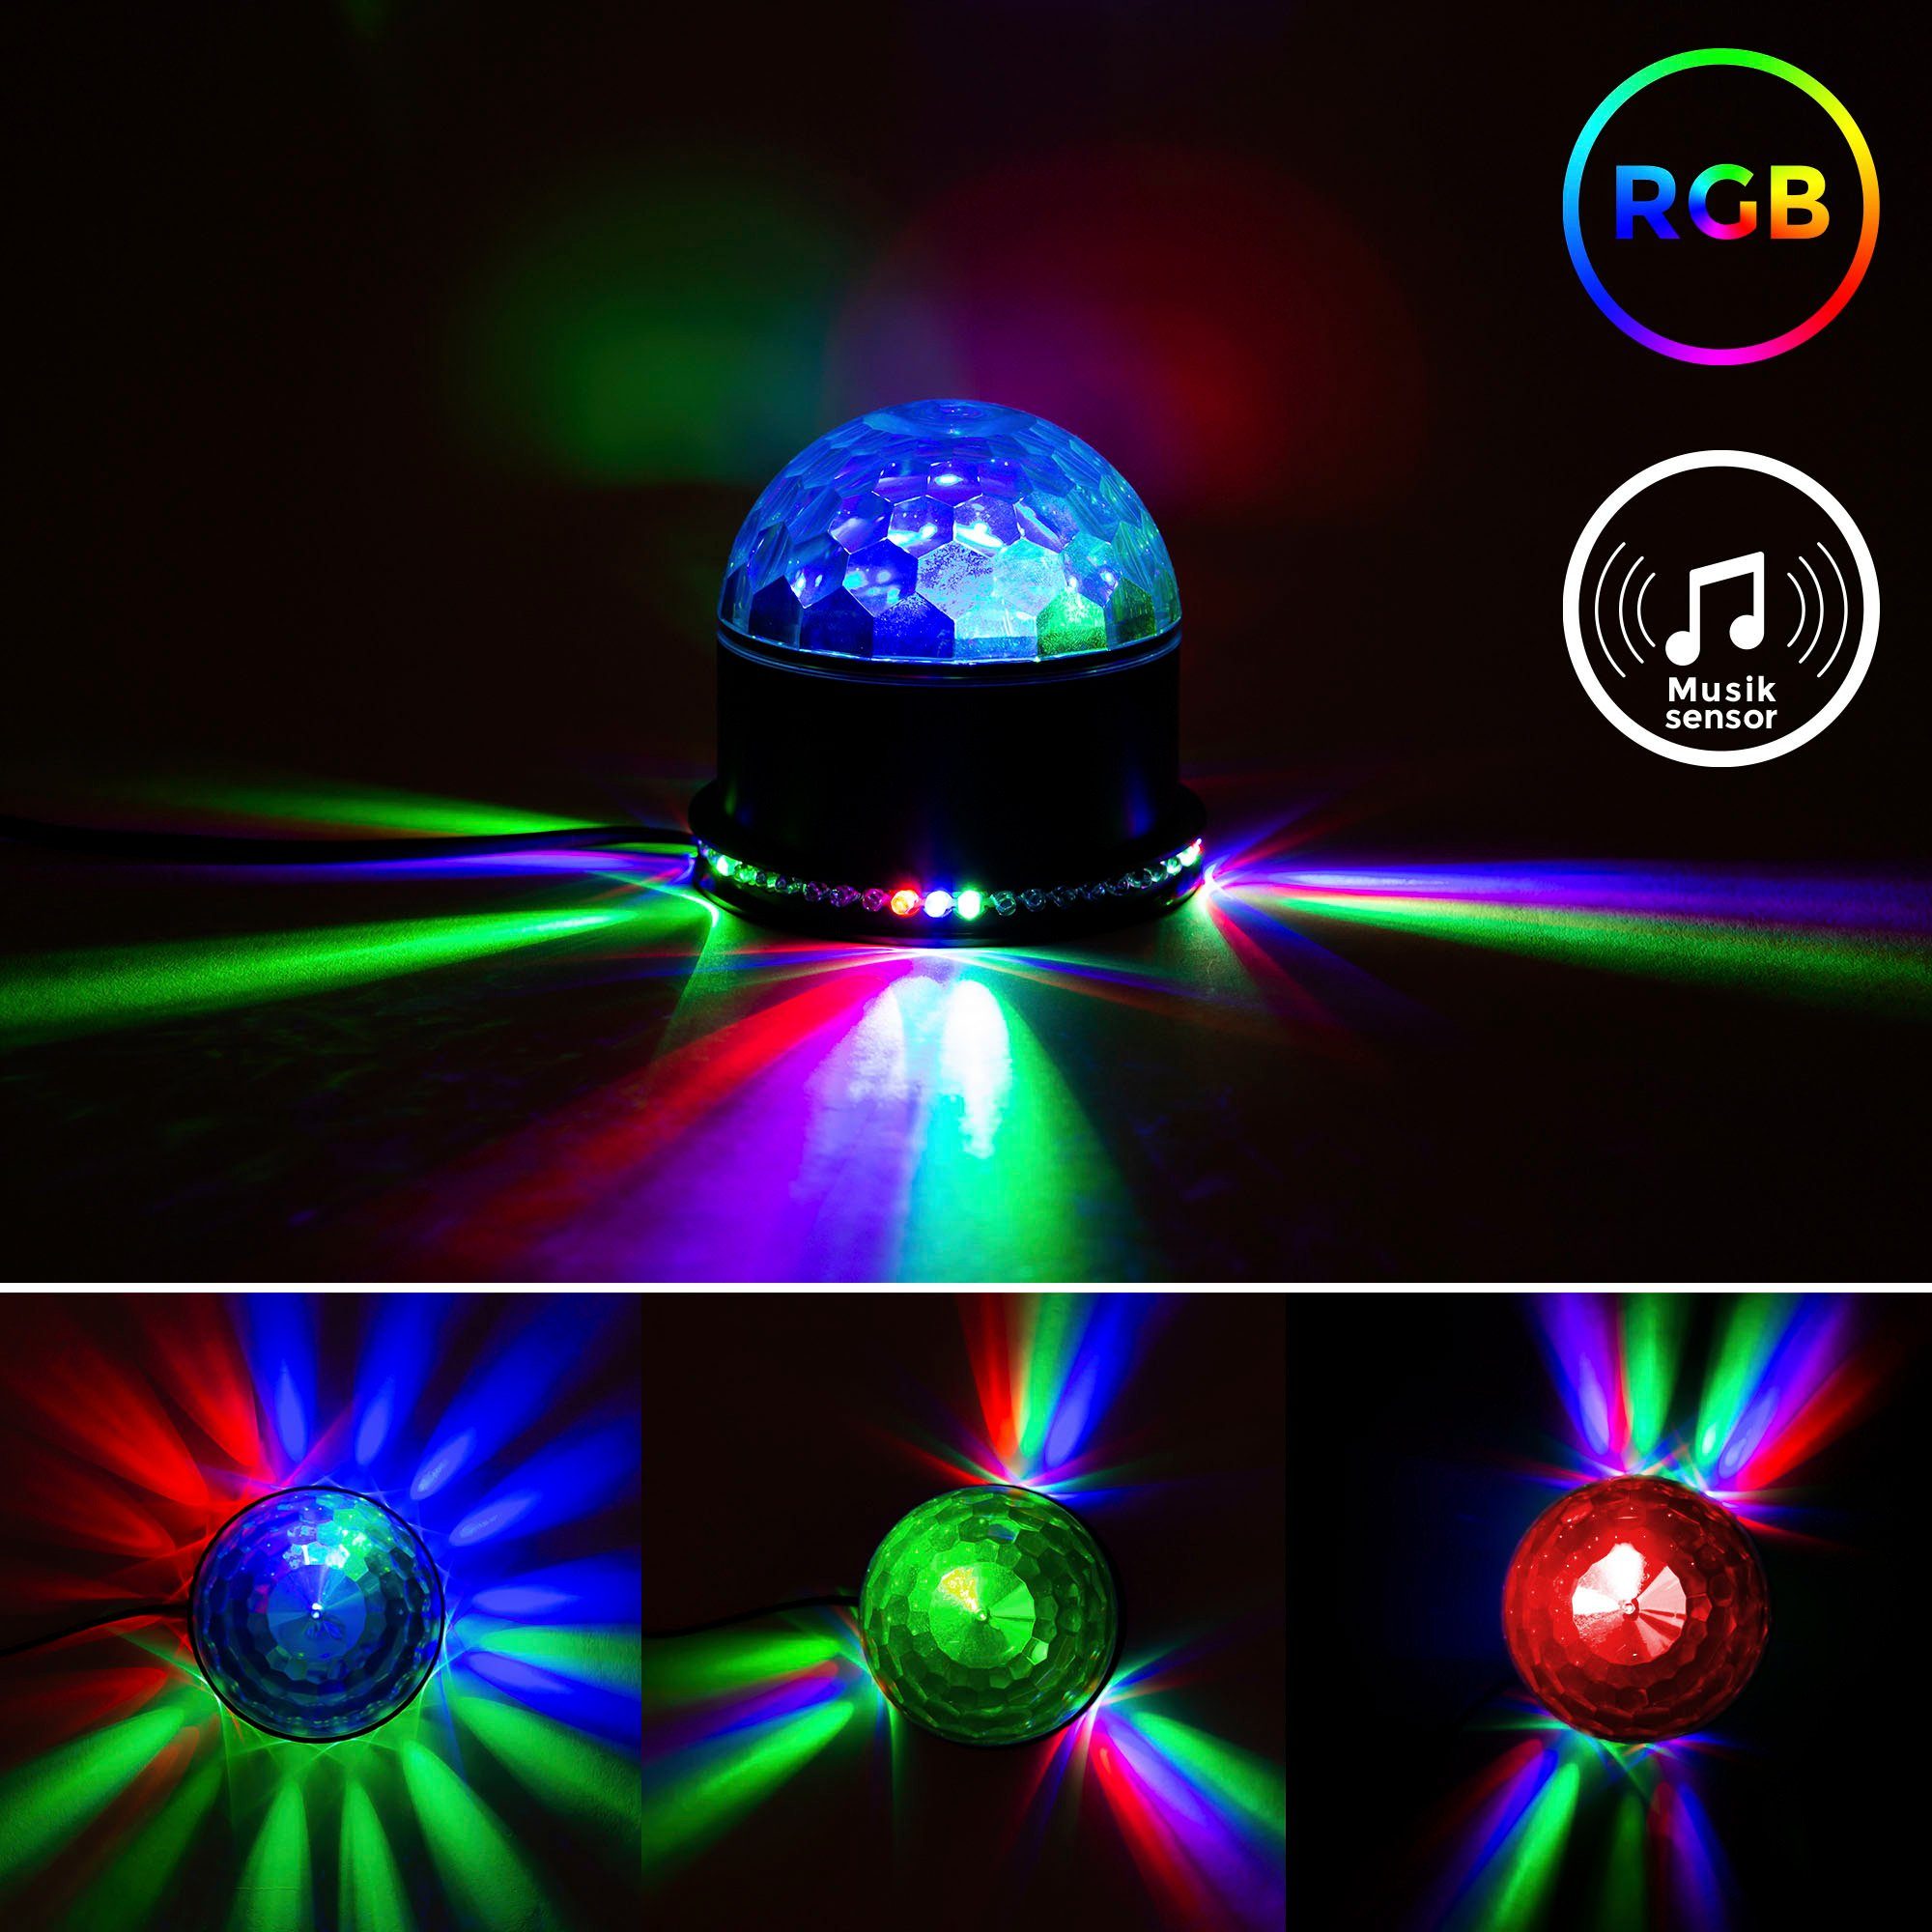 B.K.Licht LED Motivstrahler BK_GD1327 LED Tischlampe RGB LED mit Partyleuchte, Musiksensor, integriert, Partylicht, Farbwechsel, RGB, Discolicht, fest RGB